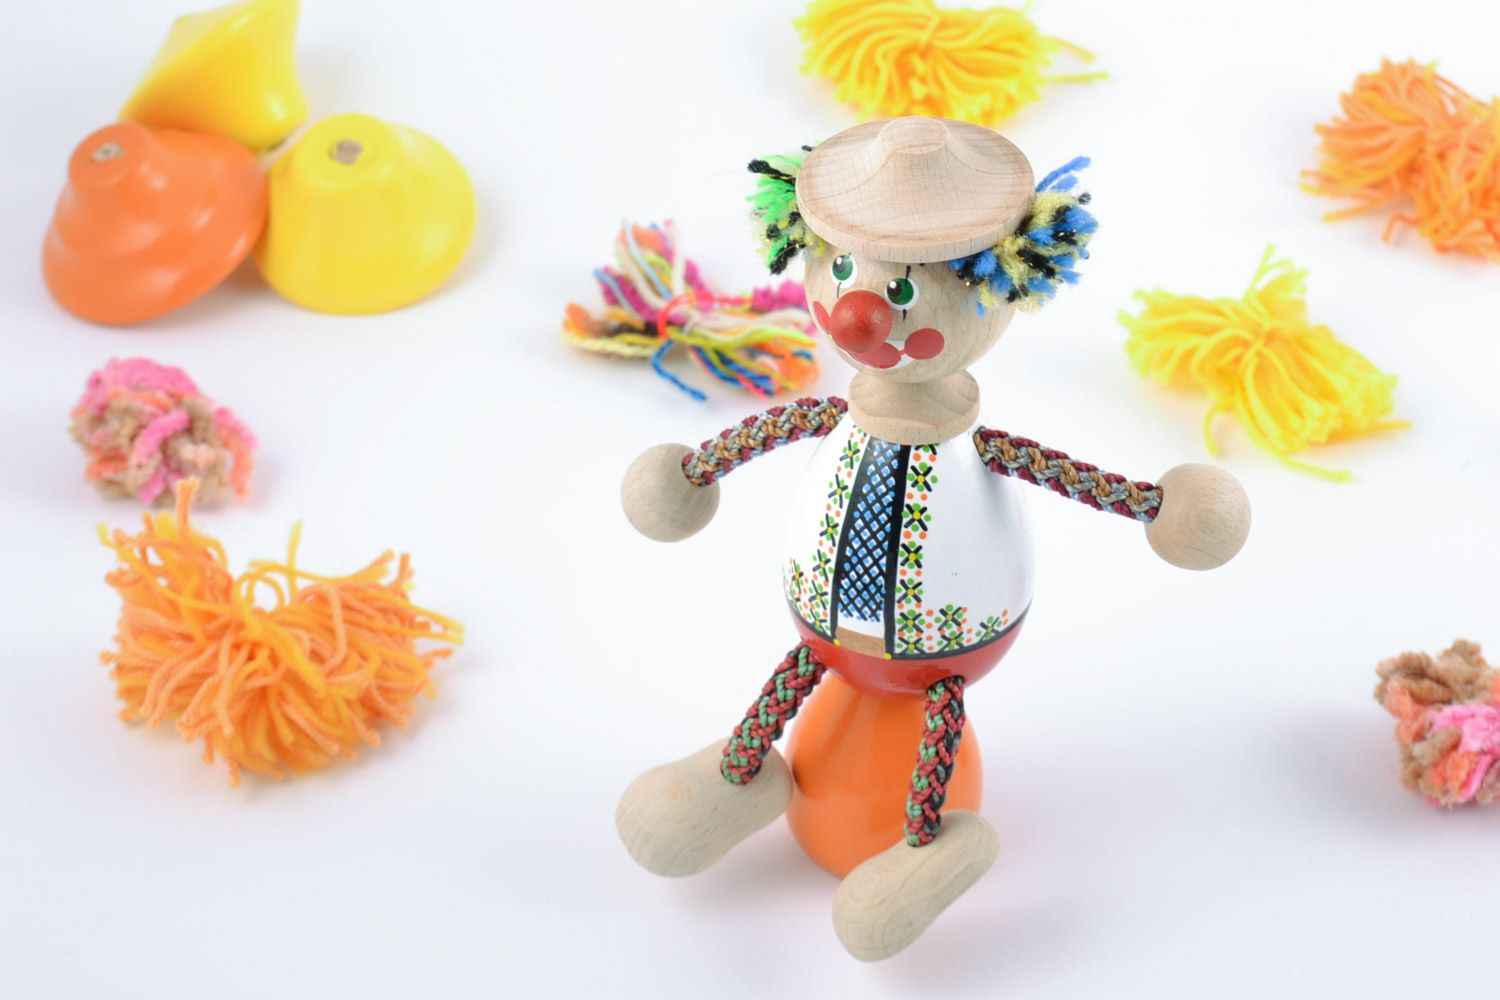 Handmade Öko Spielzeug Clown bunt bemalt originell klein für Kinderspiele foto 1